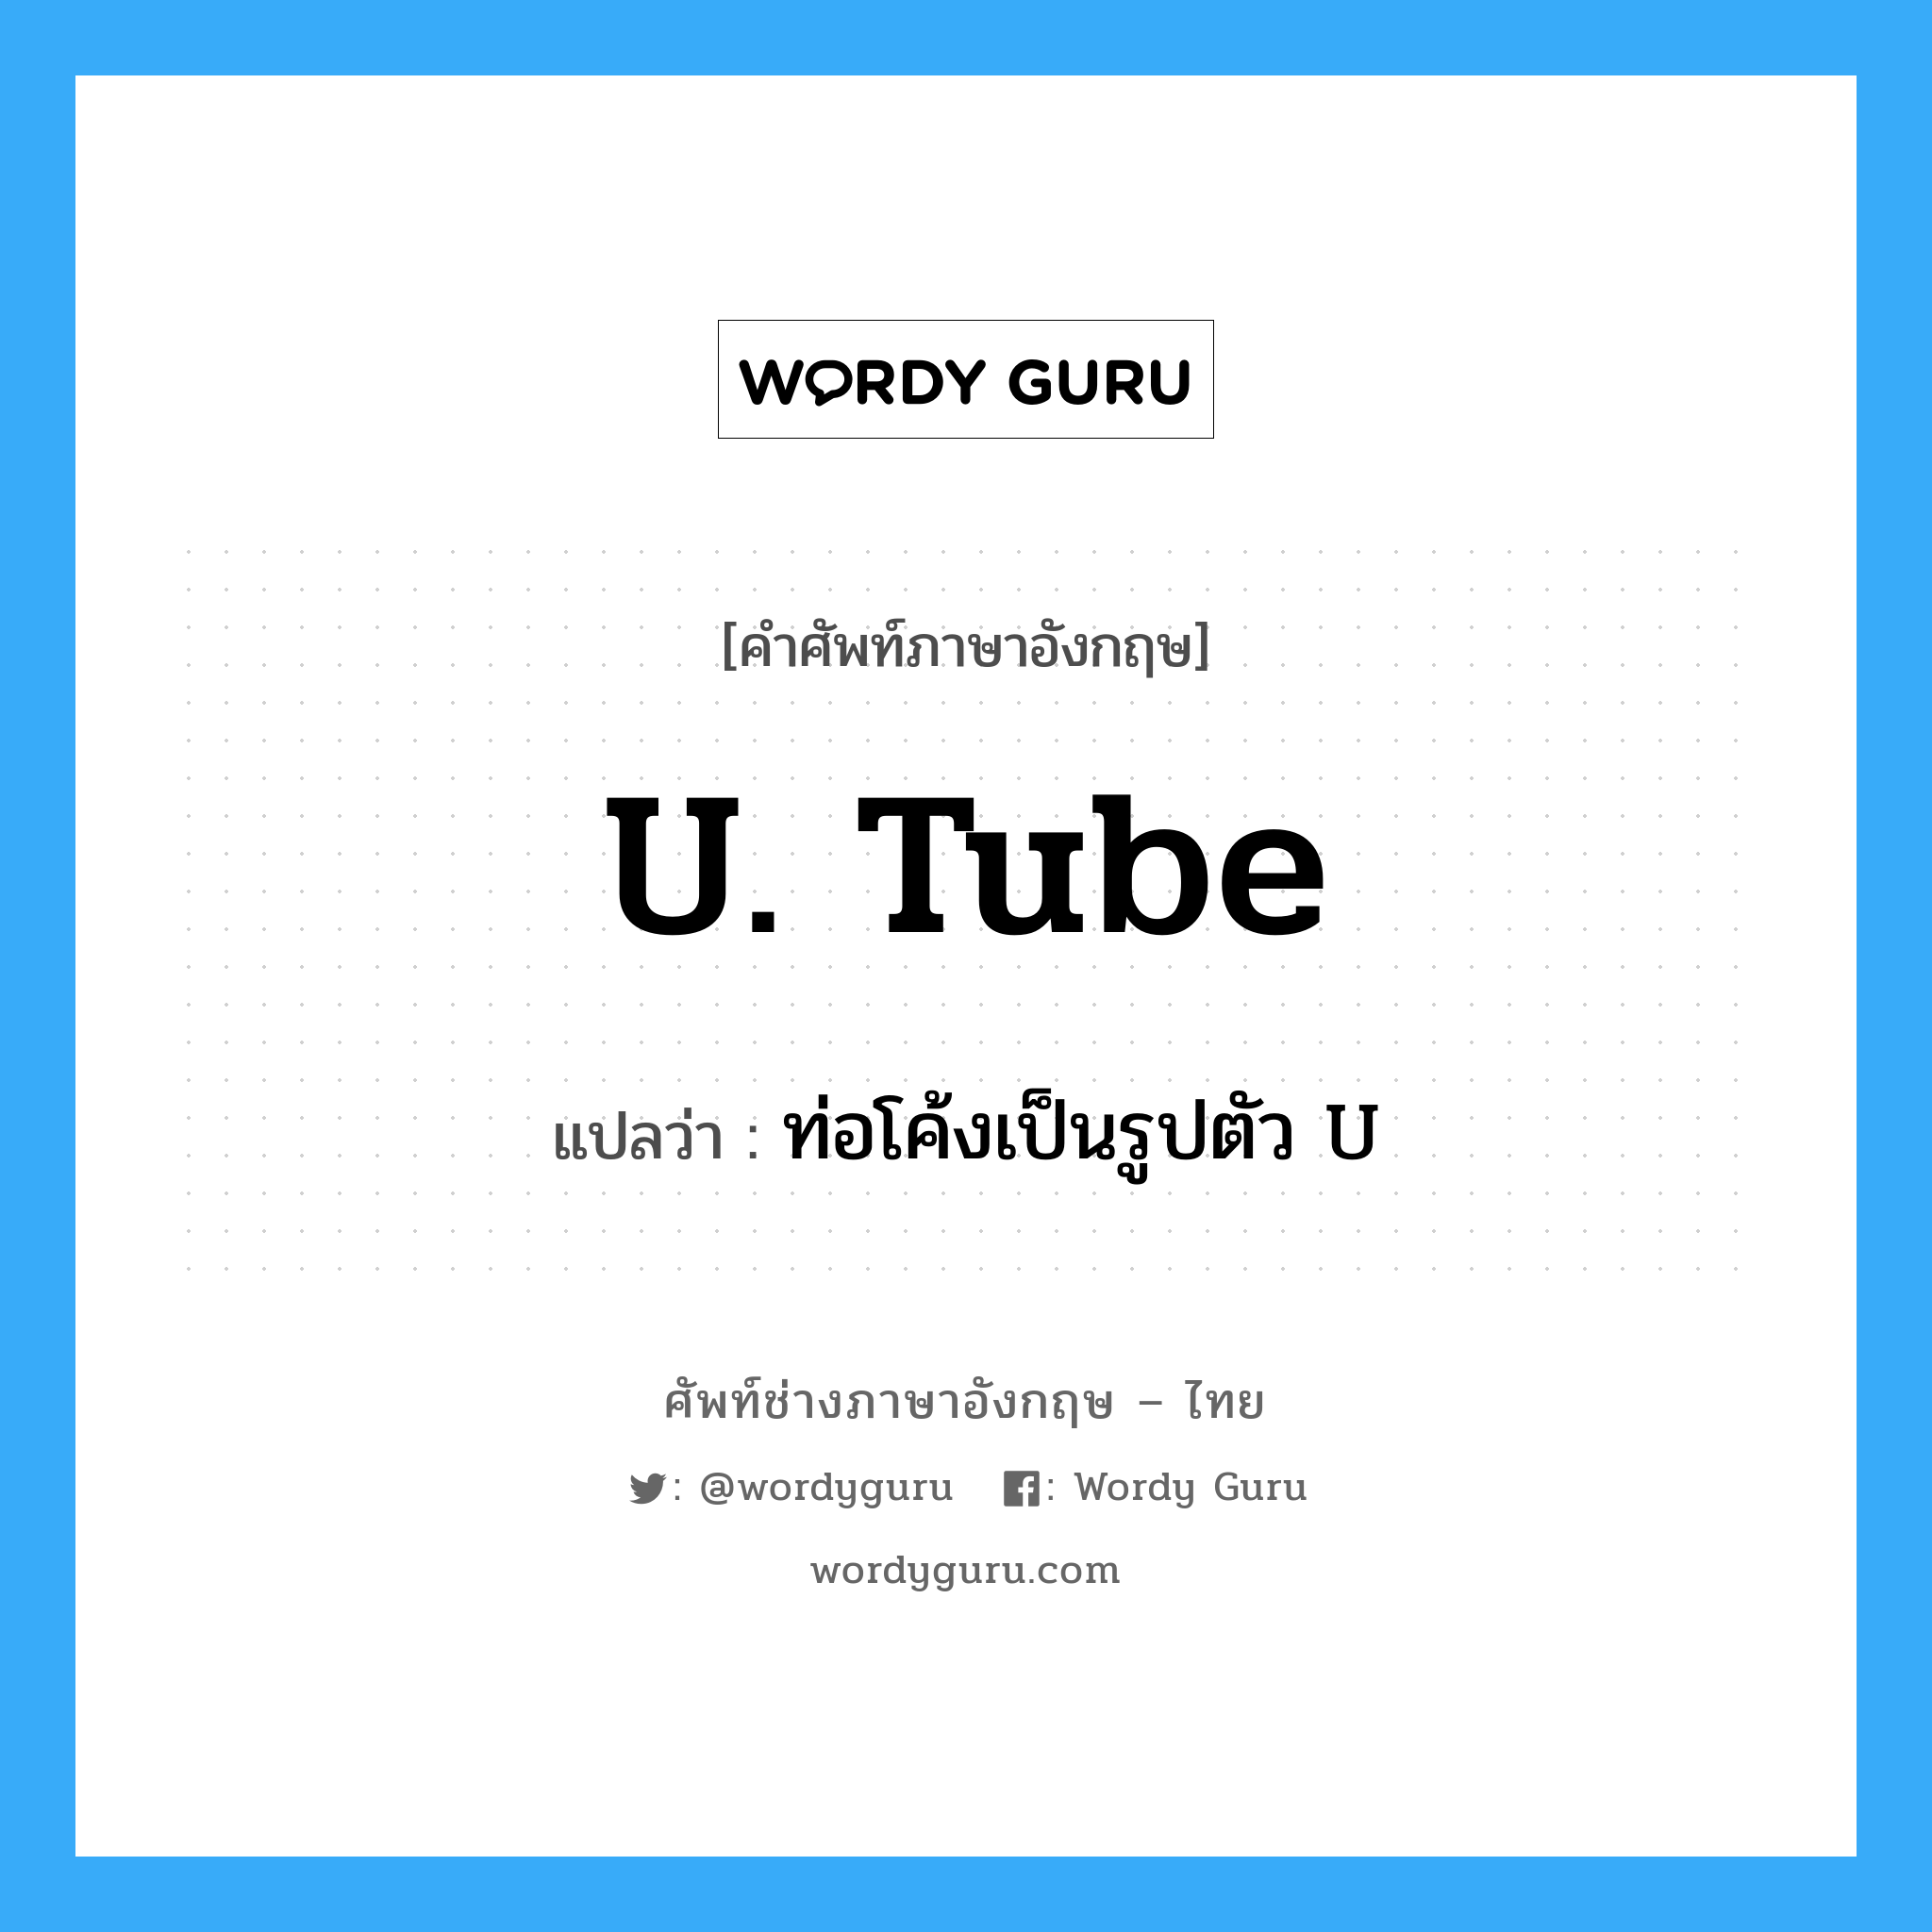 U. tube แปลว่า?, คำศัพท์ช่างภาษาอังกฤษ - ไทย U. tube คำศัพท์ภาษาอังกฤษ U. tube แปลว่า ท่อโค้งเป็นรูปตัว U